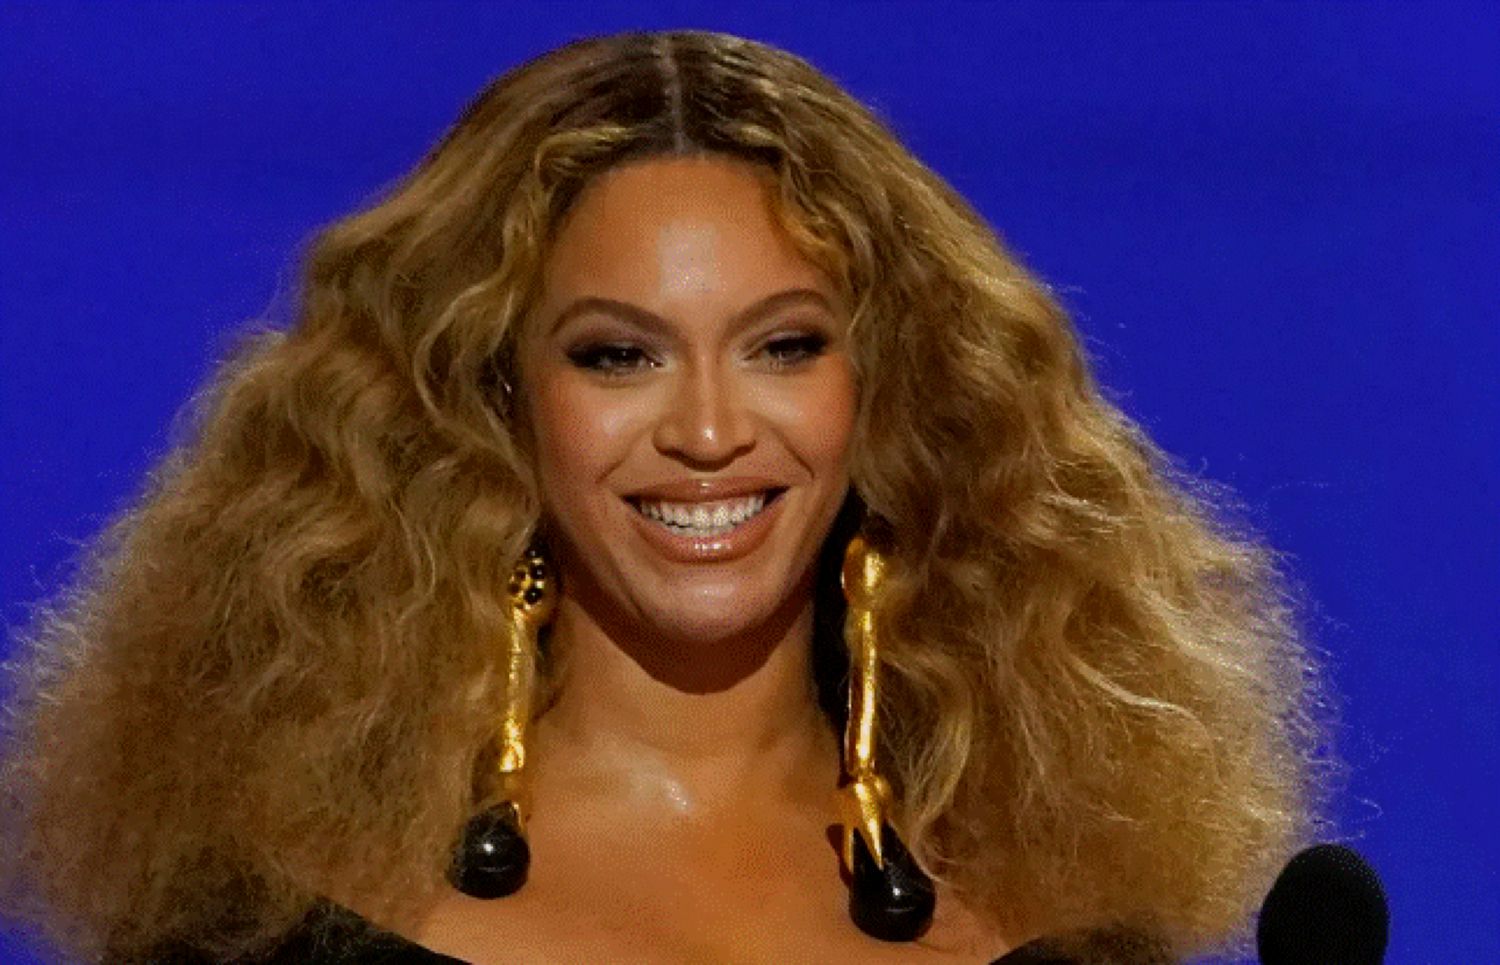 Beyoncé, pe o listă selectă, celebrată de francezi într-un mod deosebit. Doar 40 de persoane mai au această onoare